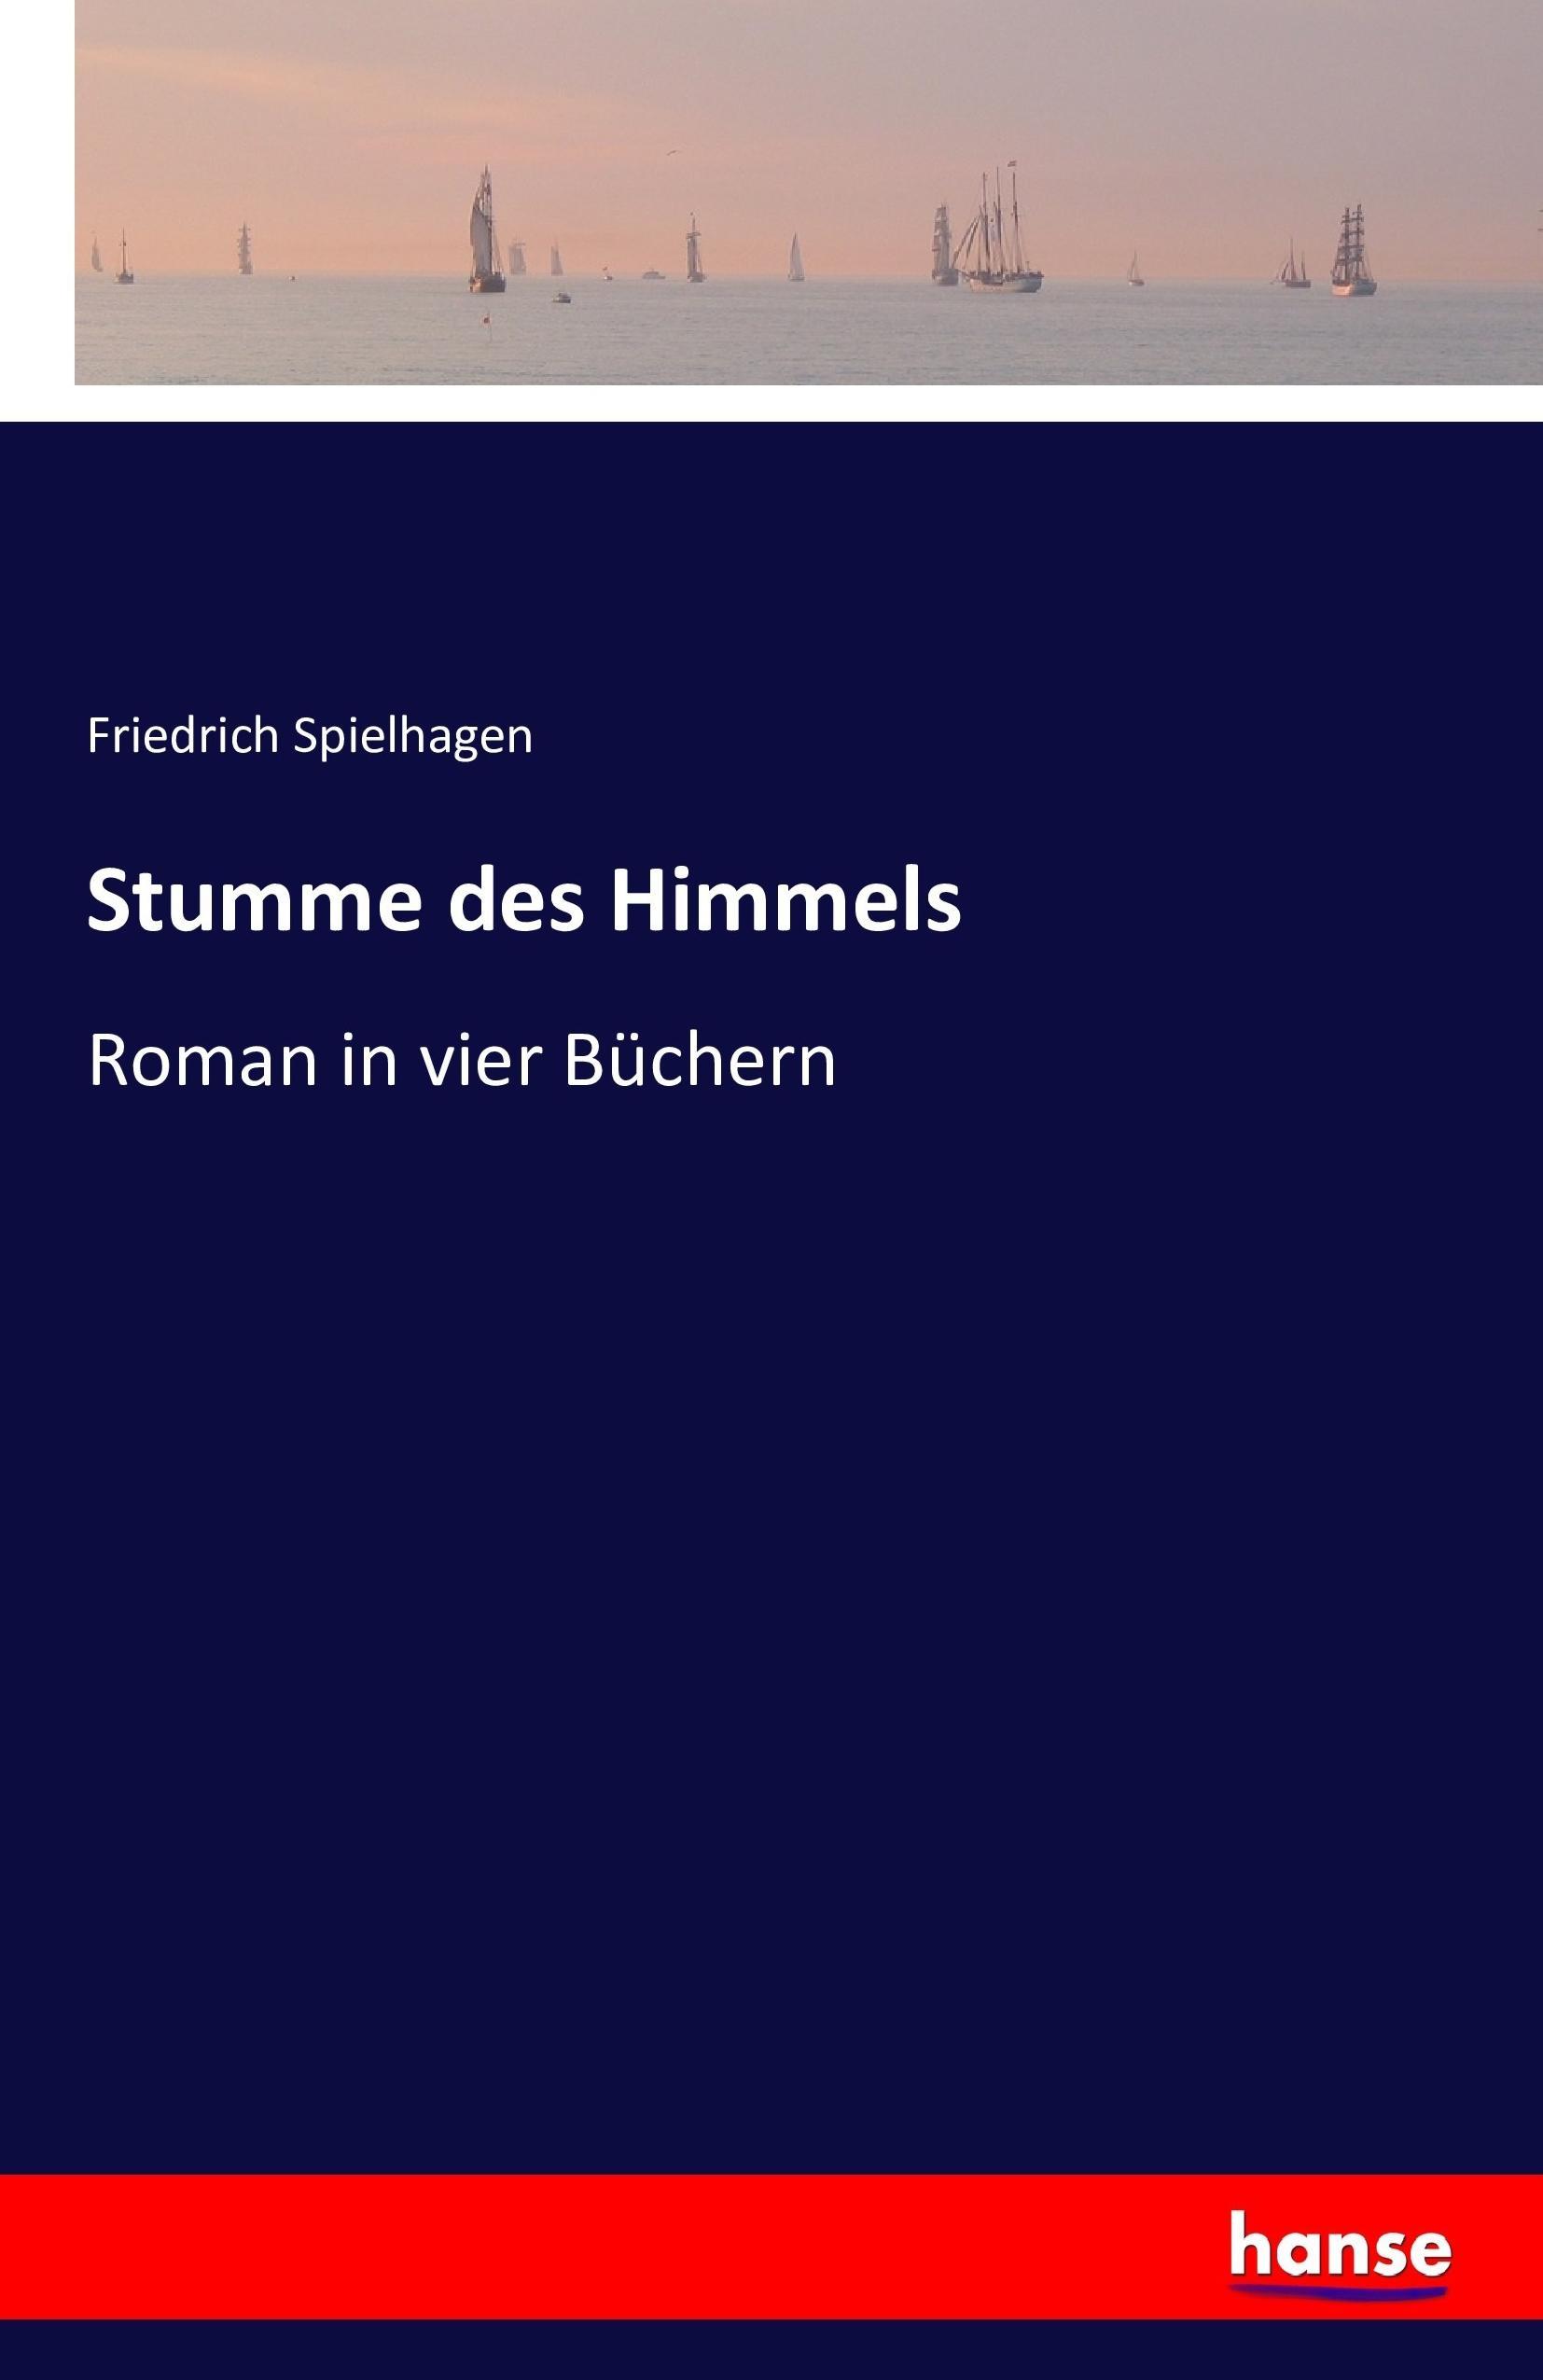 Stumme des Himmels / Roman in vier Büchern / Friedrich Spielhagen / Taschenbuch / Paperback / 384 S. / Deutsch / 2016 / hansebooks / EAN 9783742865472 - Spielhagen, Friedrich